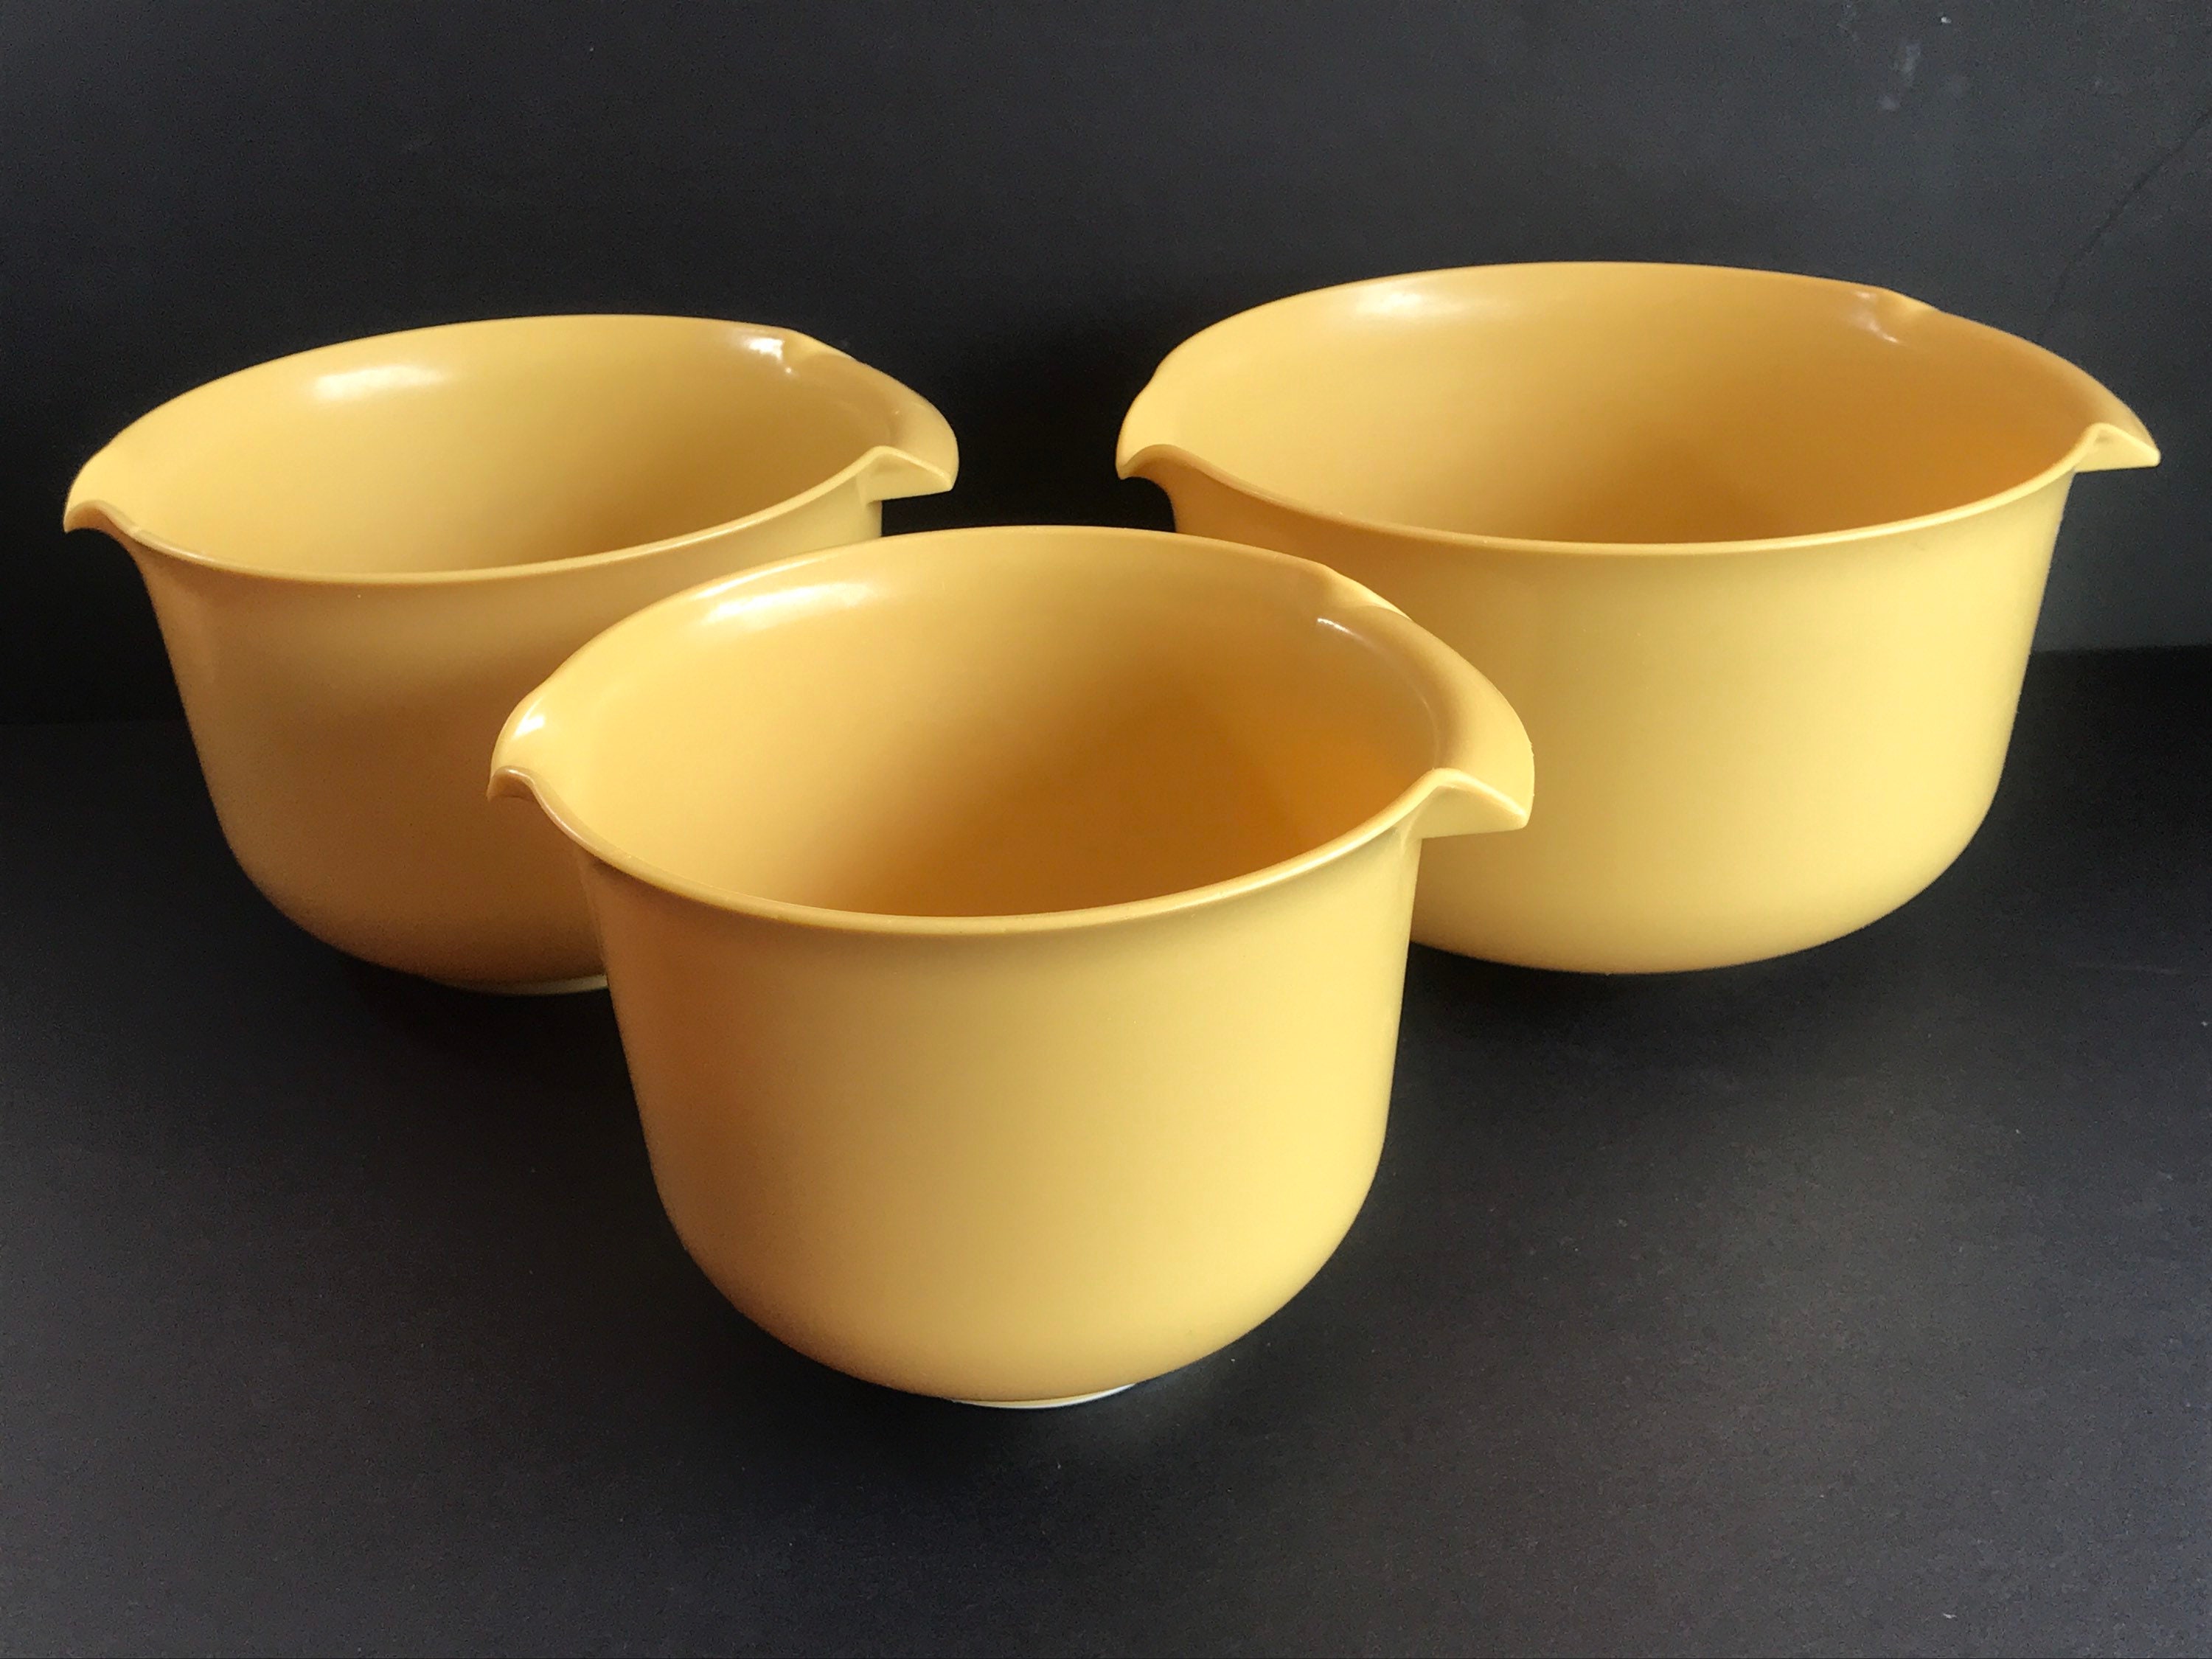 3-qt (2.8-L) Plastic Mixing Bowl - Shop